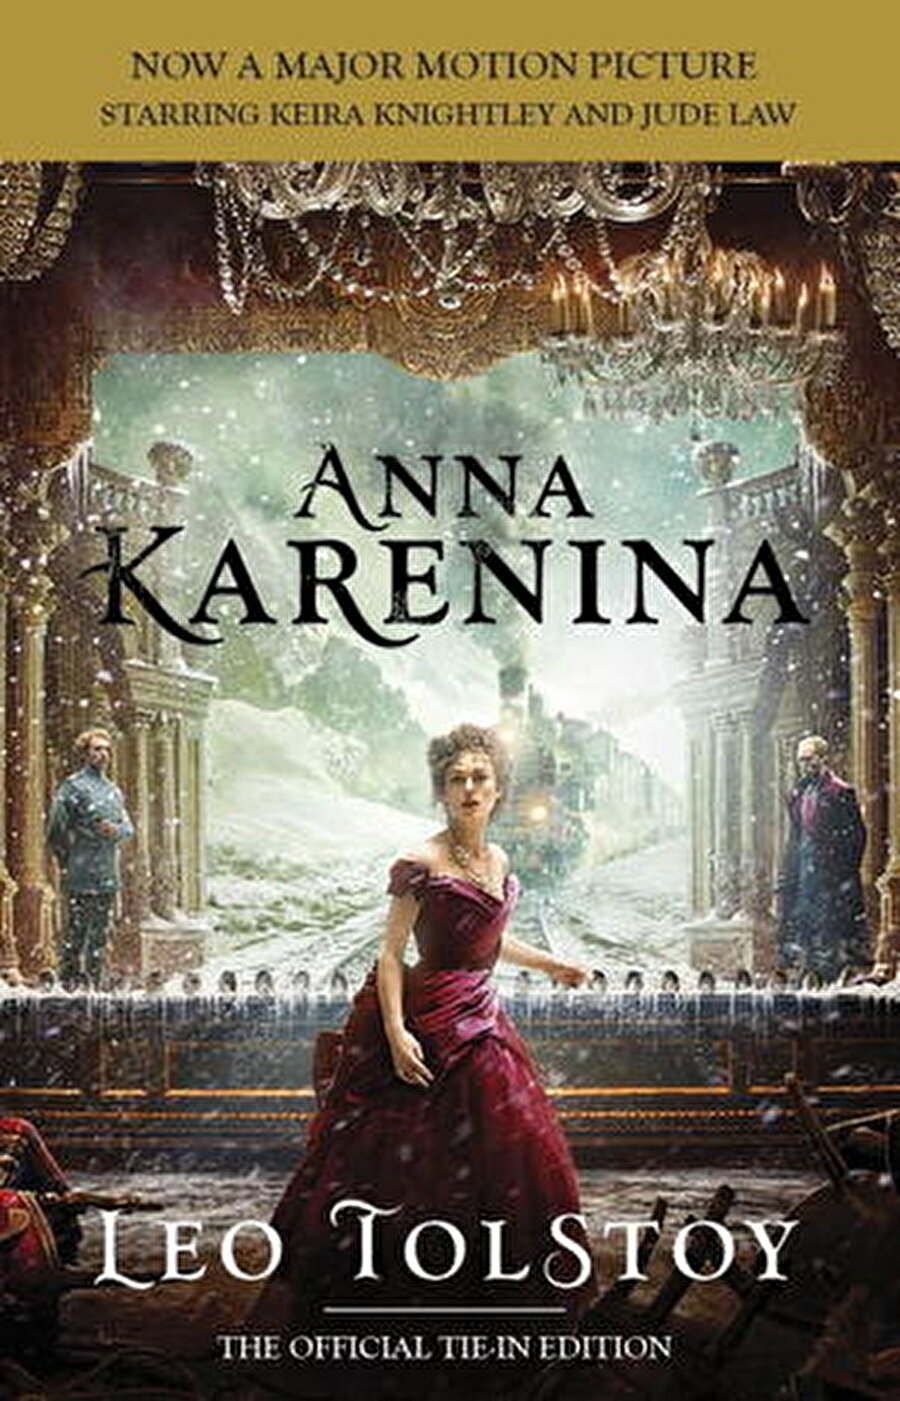 Anna Karenina / Leo Tolstoy

                                    Eser, 1870'lerin Rusya'sında, toplumun üst sınıfına mensup kimseler arasında yaşanan birbirinden bağımsız iki aşk macerasını anlatmaktadır. Olaylar Moskova'da, Petersburg'da ve asilzadelerin yazlık malikanelerinde geçer.
                                